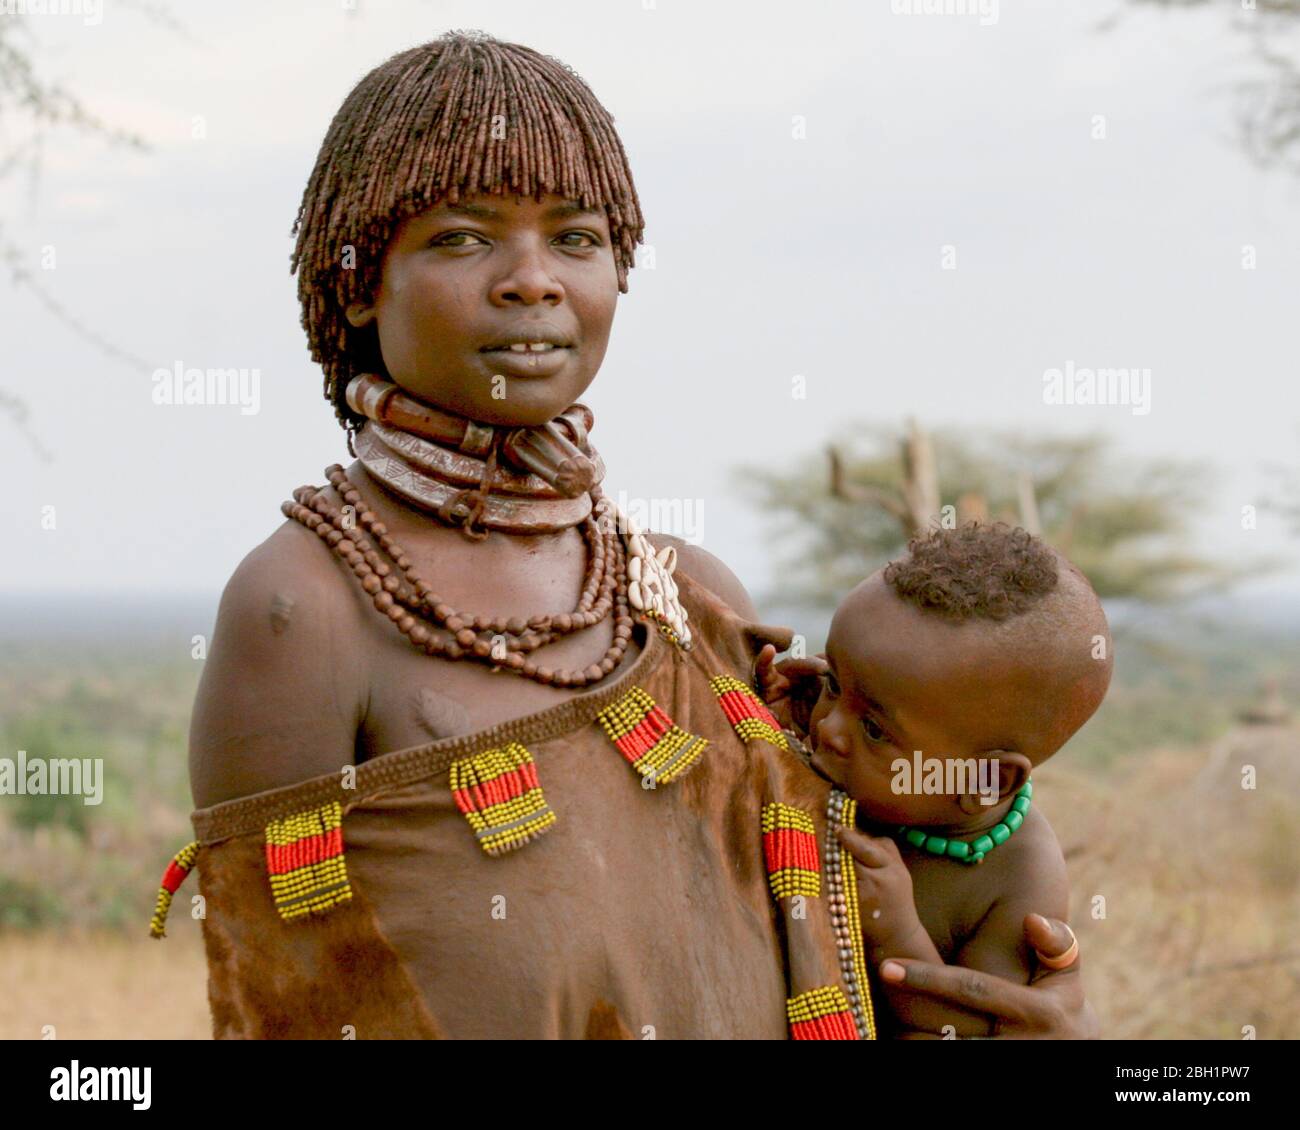 Hamer Tribeswoman tient son bébé. Photographié dans la vallée de la rivière Omo, en Ethiopie Banque D'Images